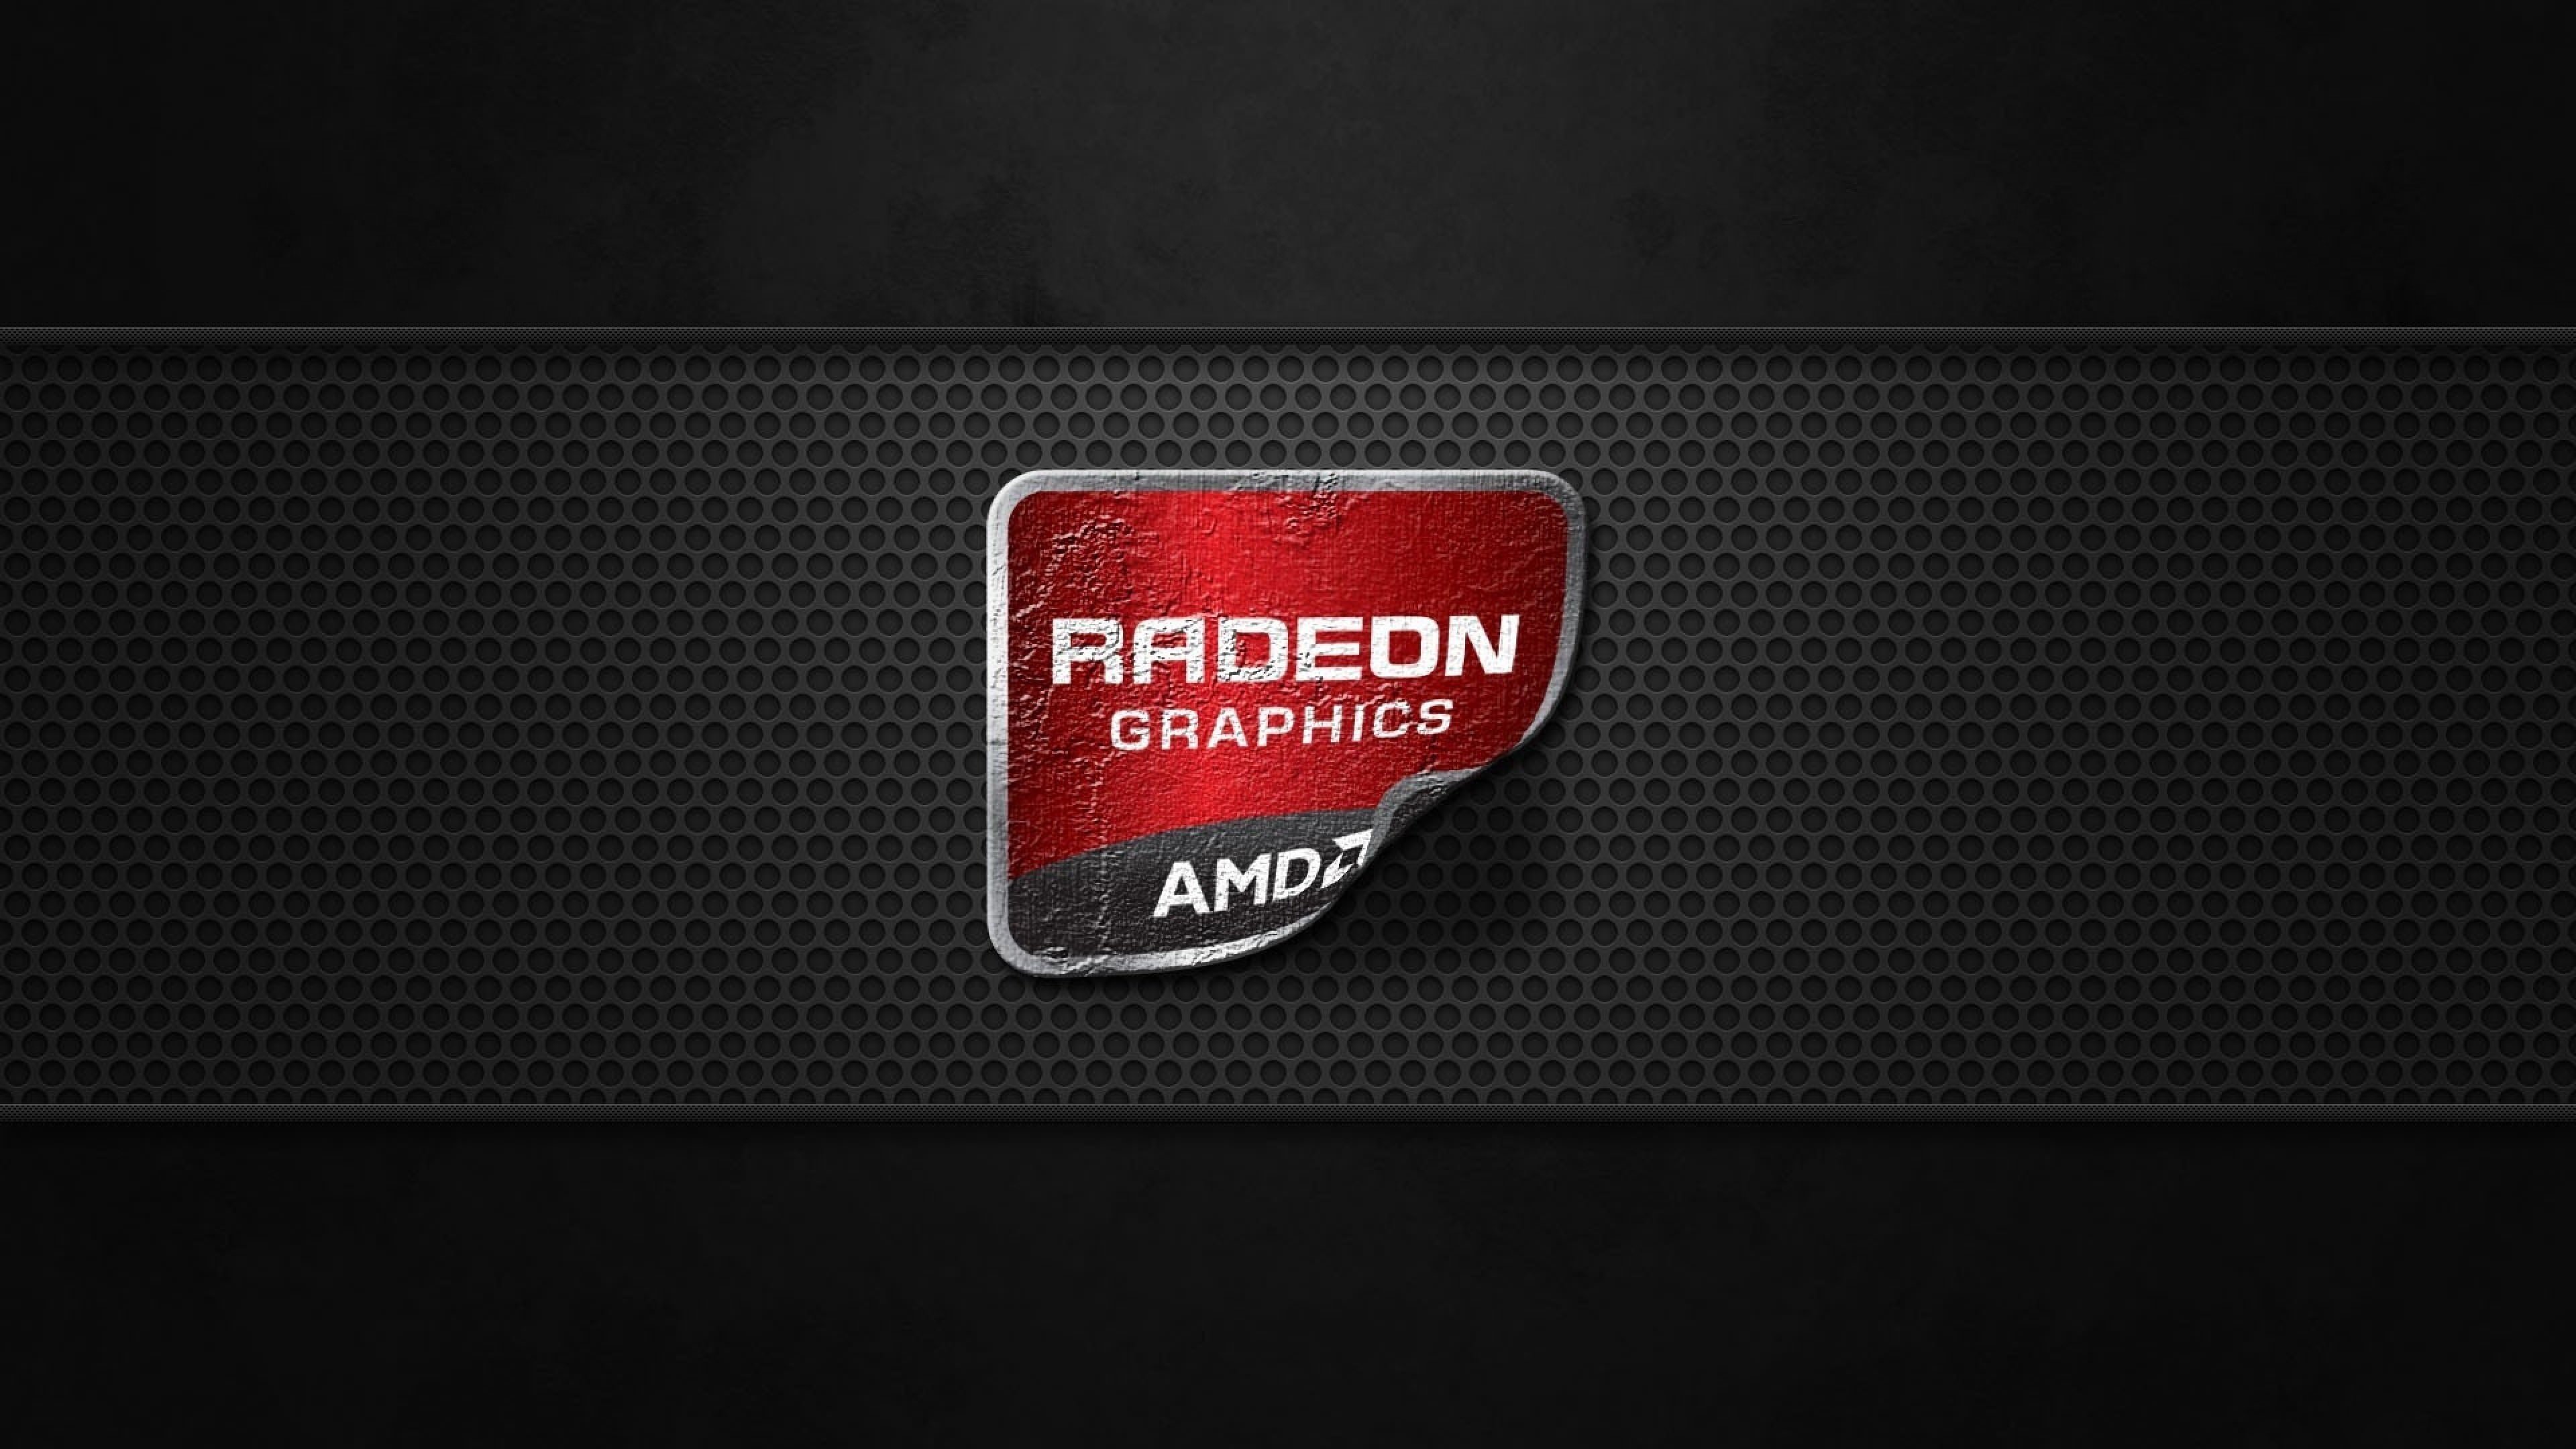 AMD Radeon Graphics Wallpaper for Desktop 4K 3840x2160